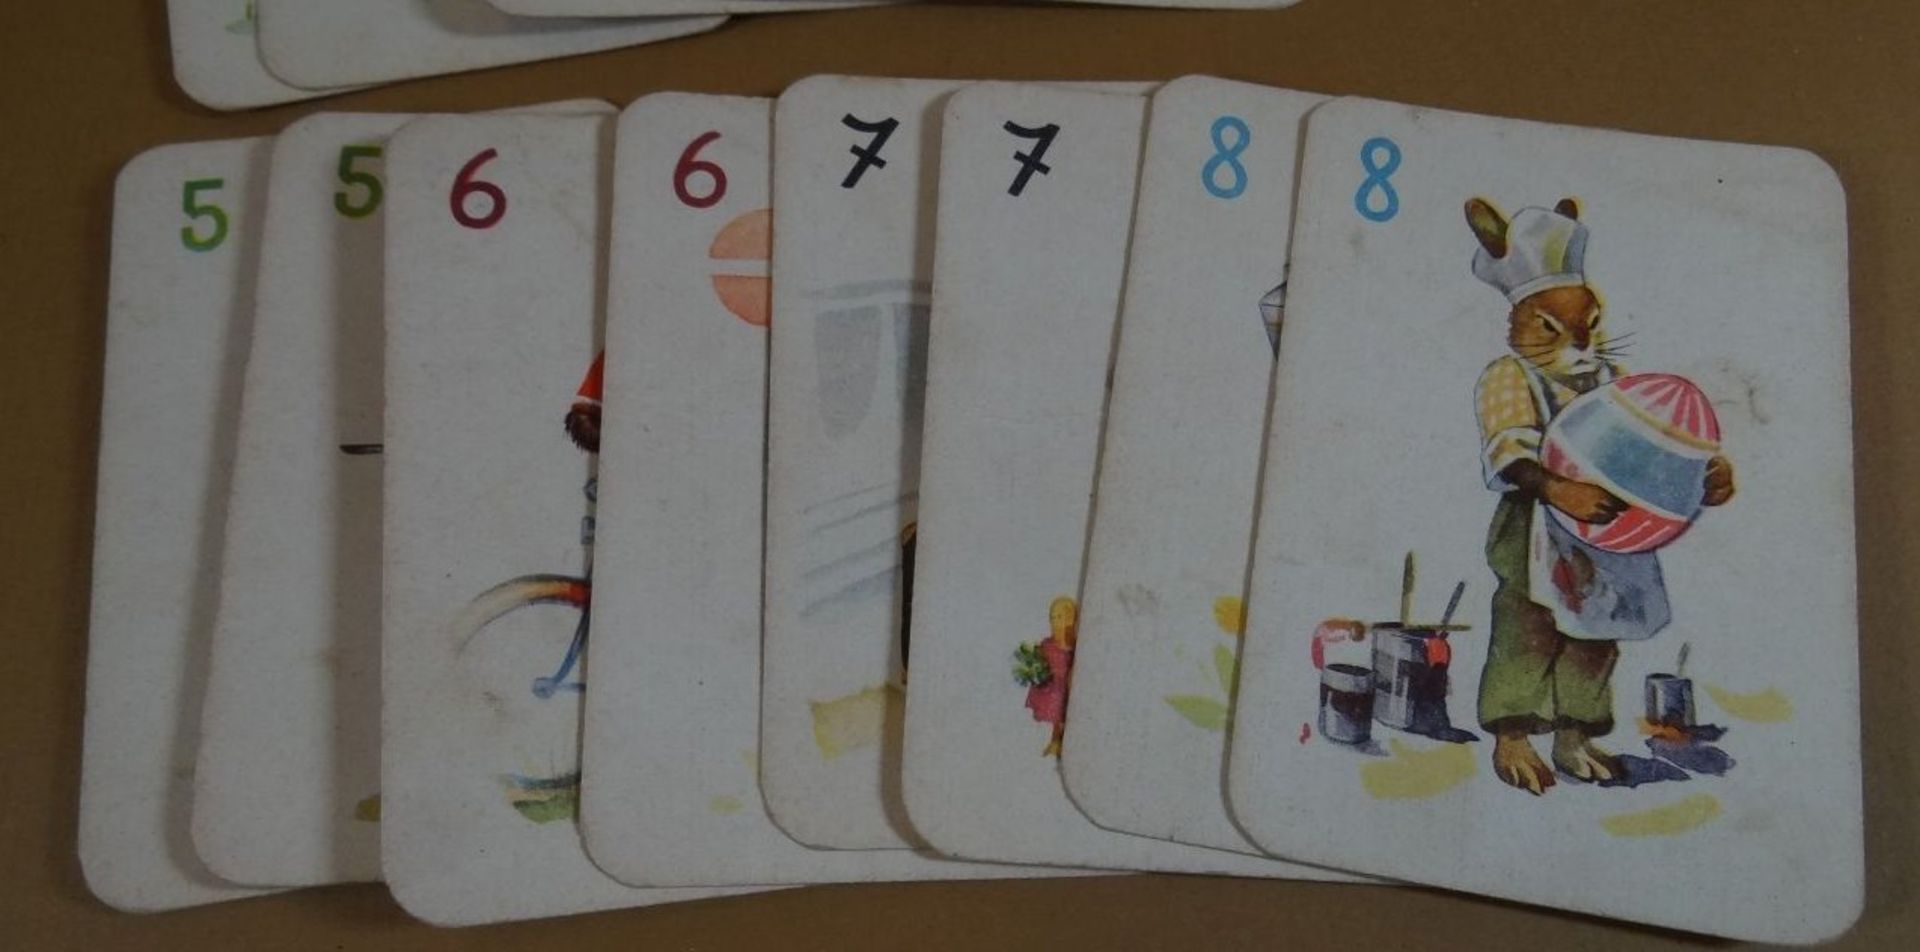 altes Kartenspiel "Schwarzer Peter", wohl vollständig - Bild 4 aus 8